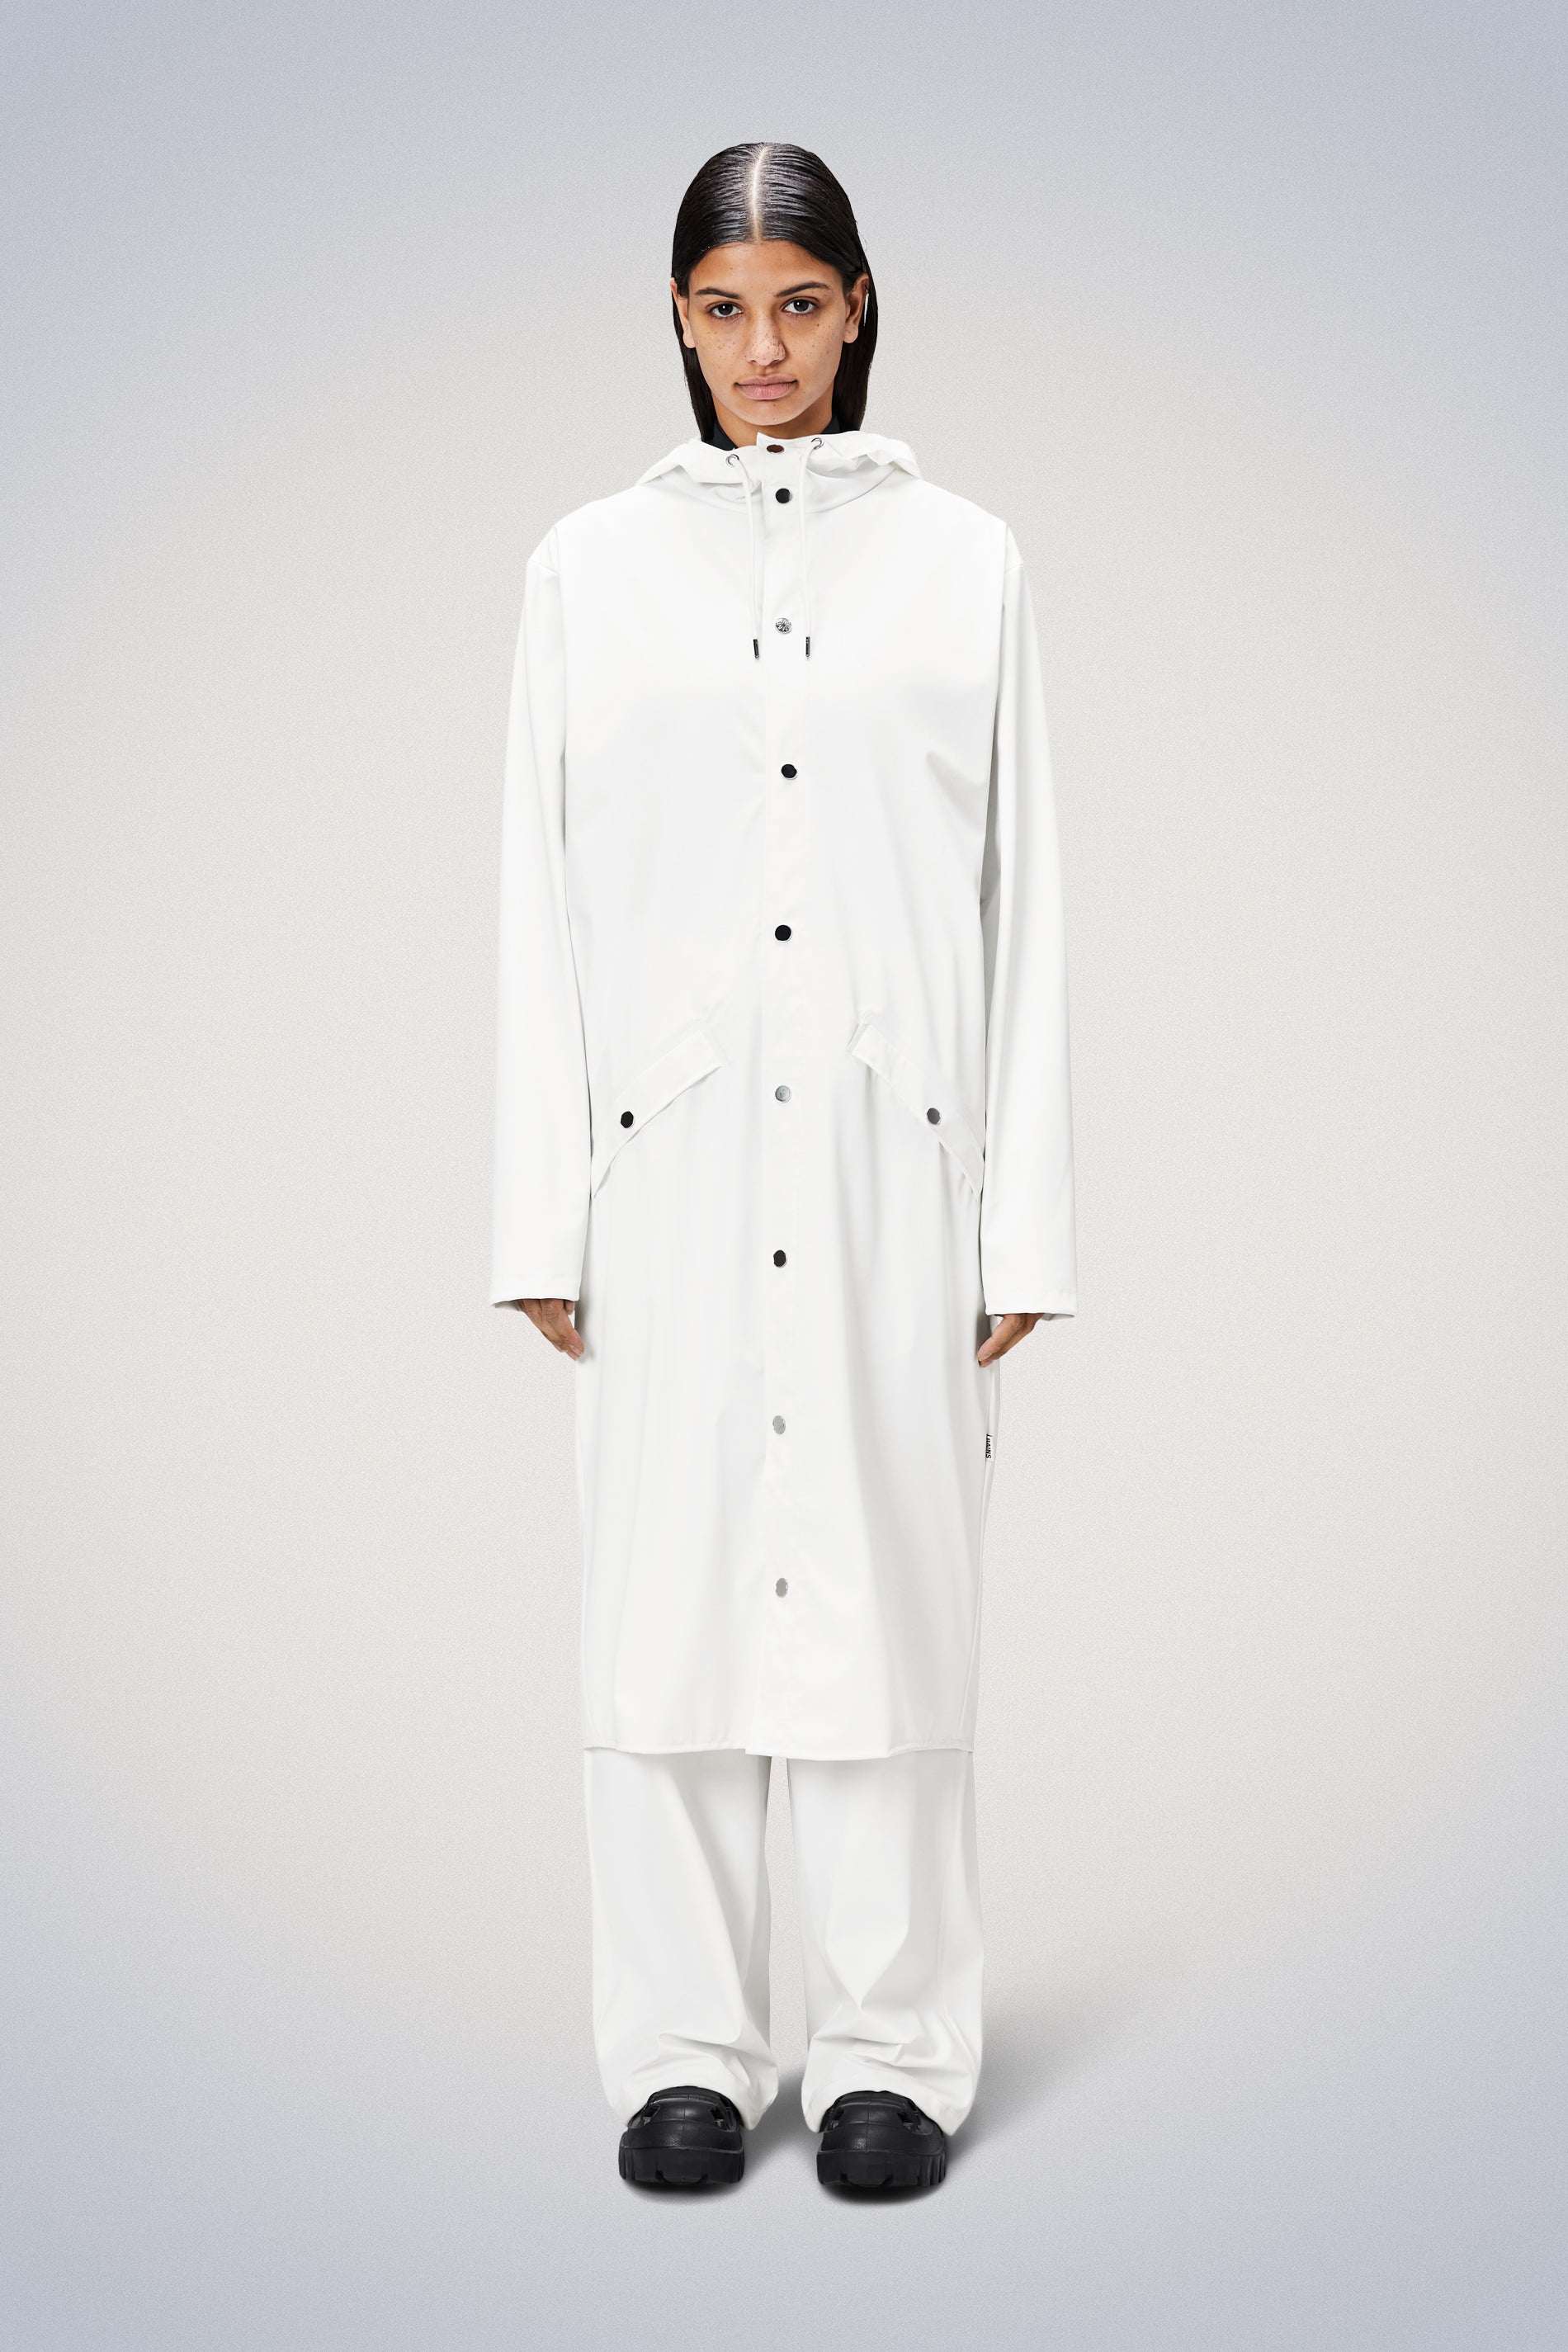 Rain Jackets for Women | Buy Modern Waterproof Coats | Rains